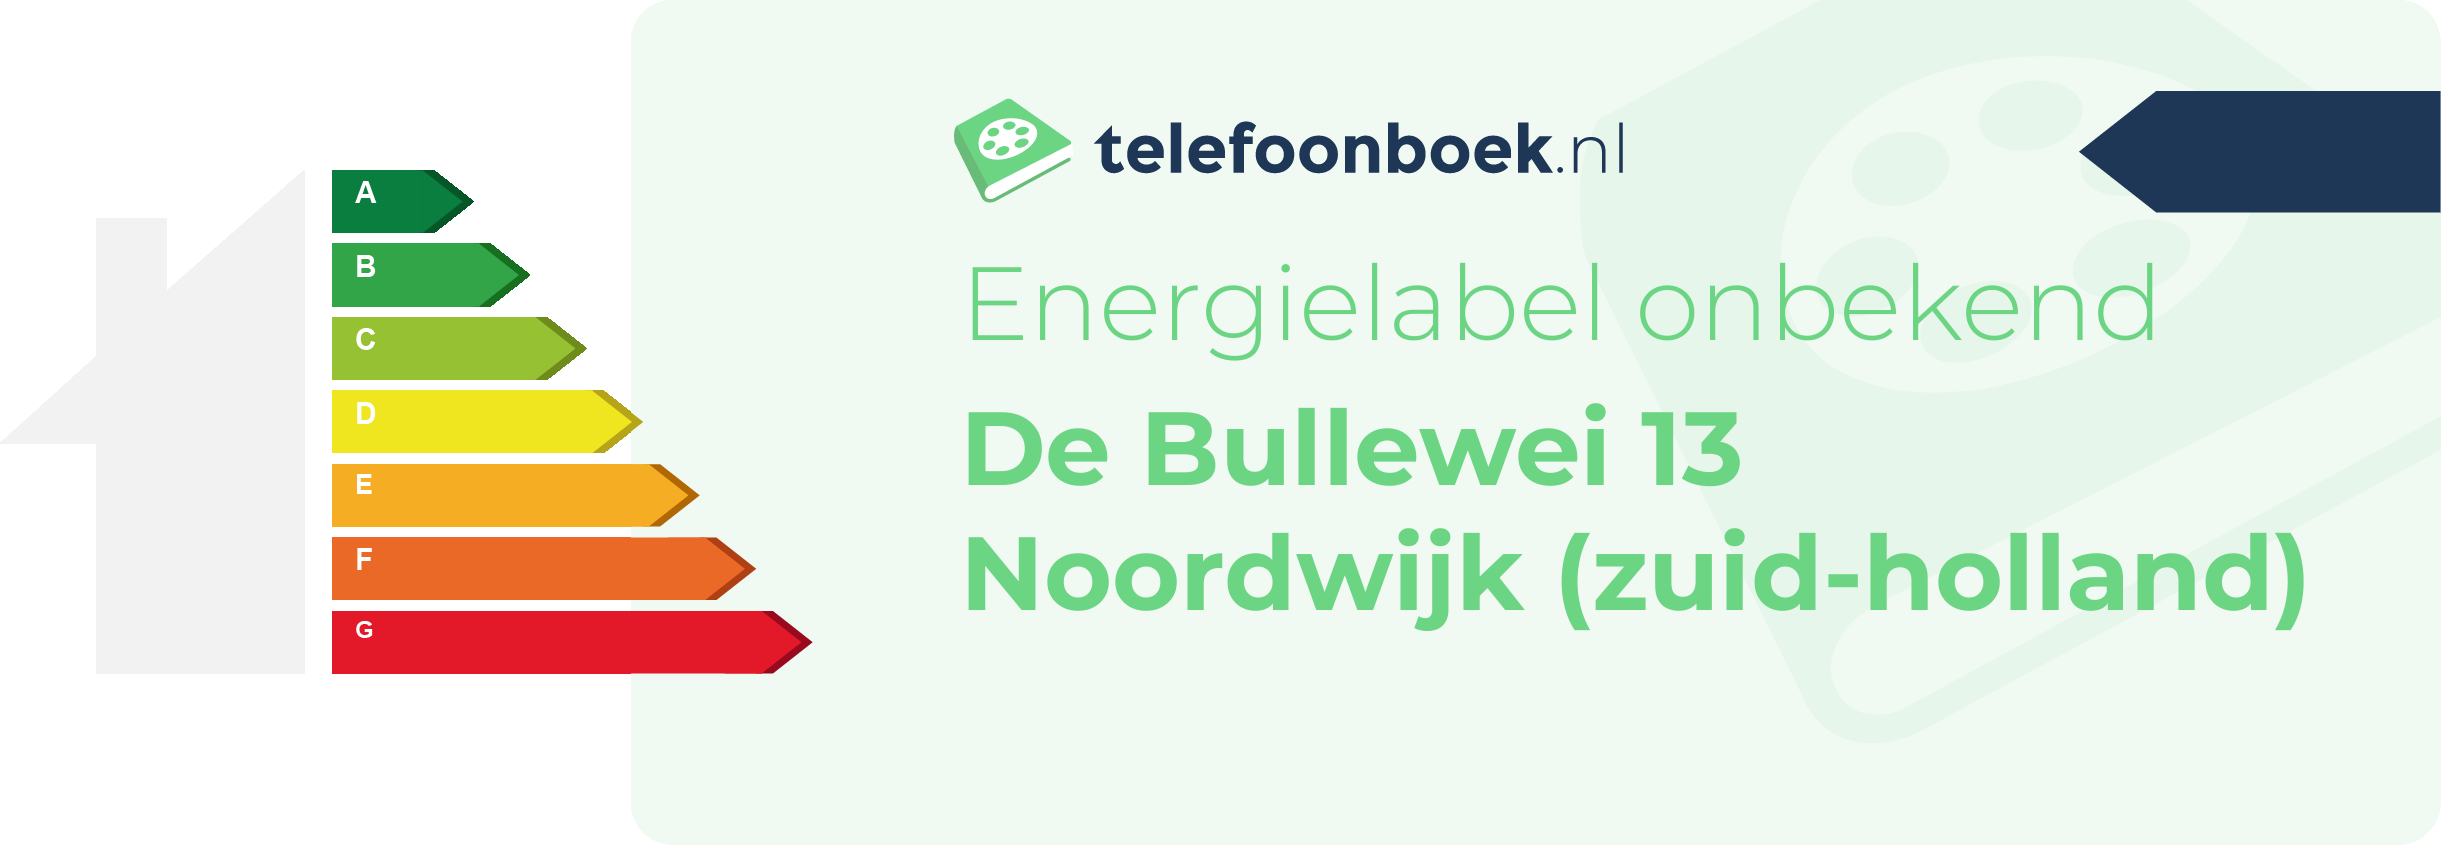 Energielabel De Bullewei 13 Noordwijk (Zuid-Holland)